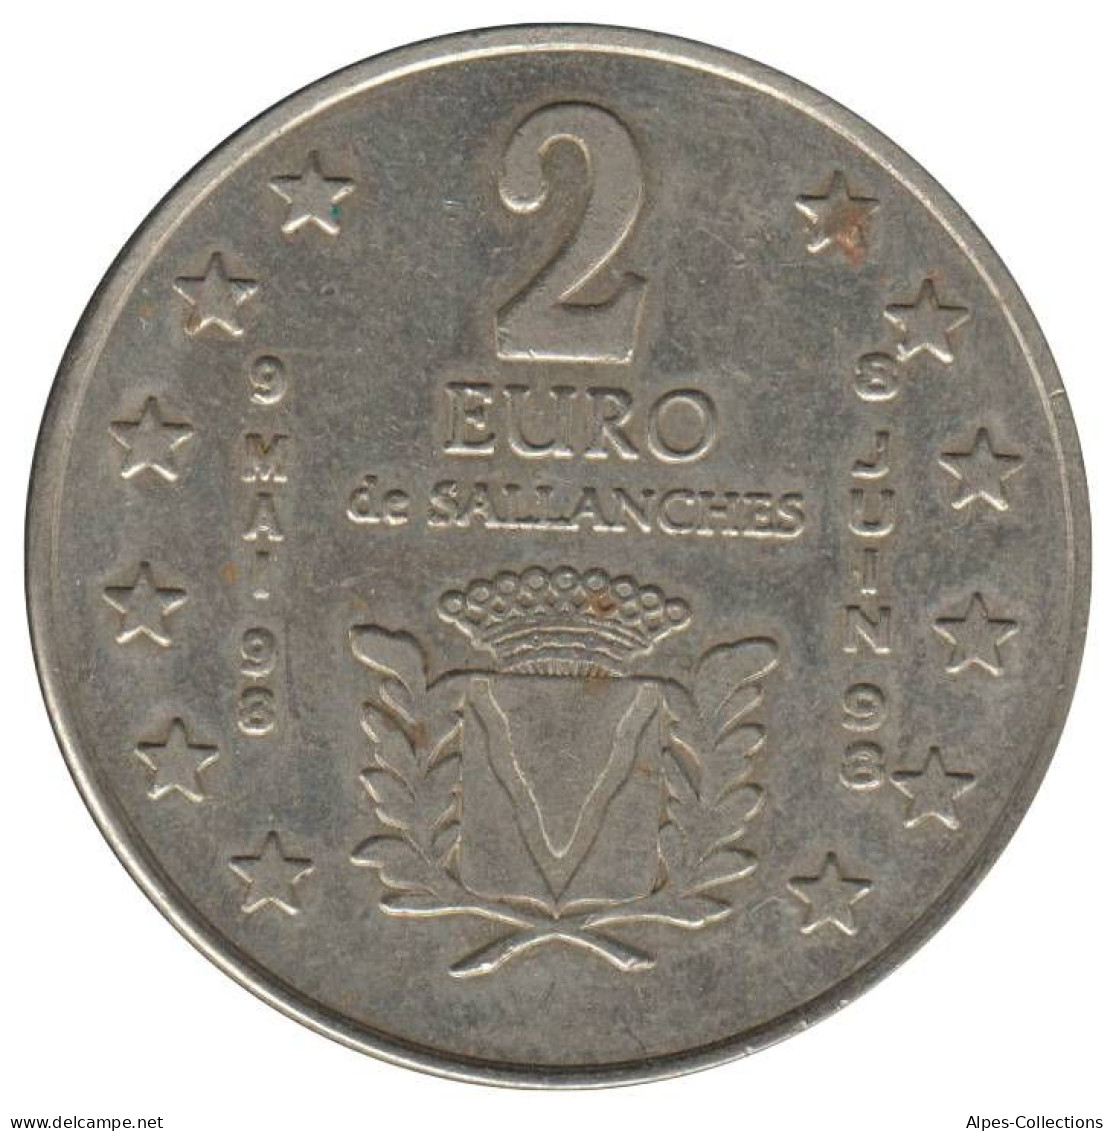 SALLANCHES - EU0020.1 - 2 EURO DES VILLES - Réf: NR - 1998 - Euros Of The Cities